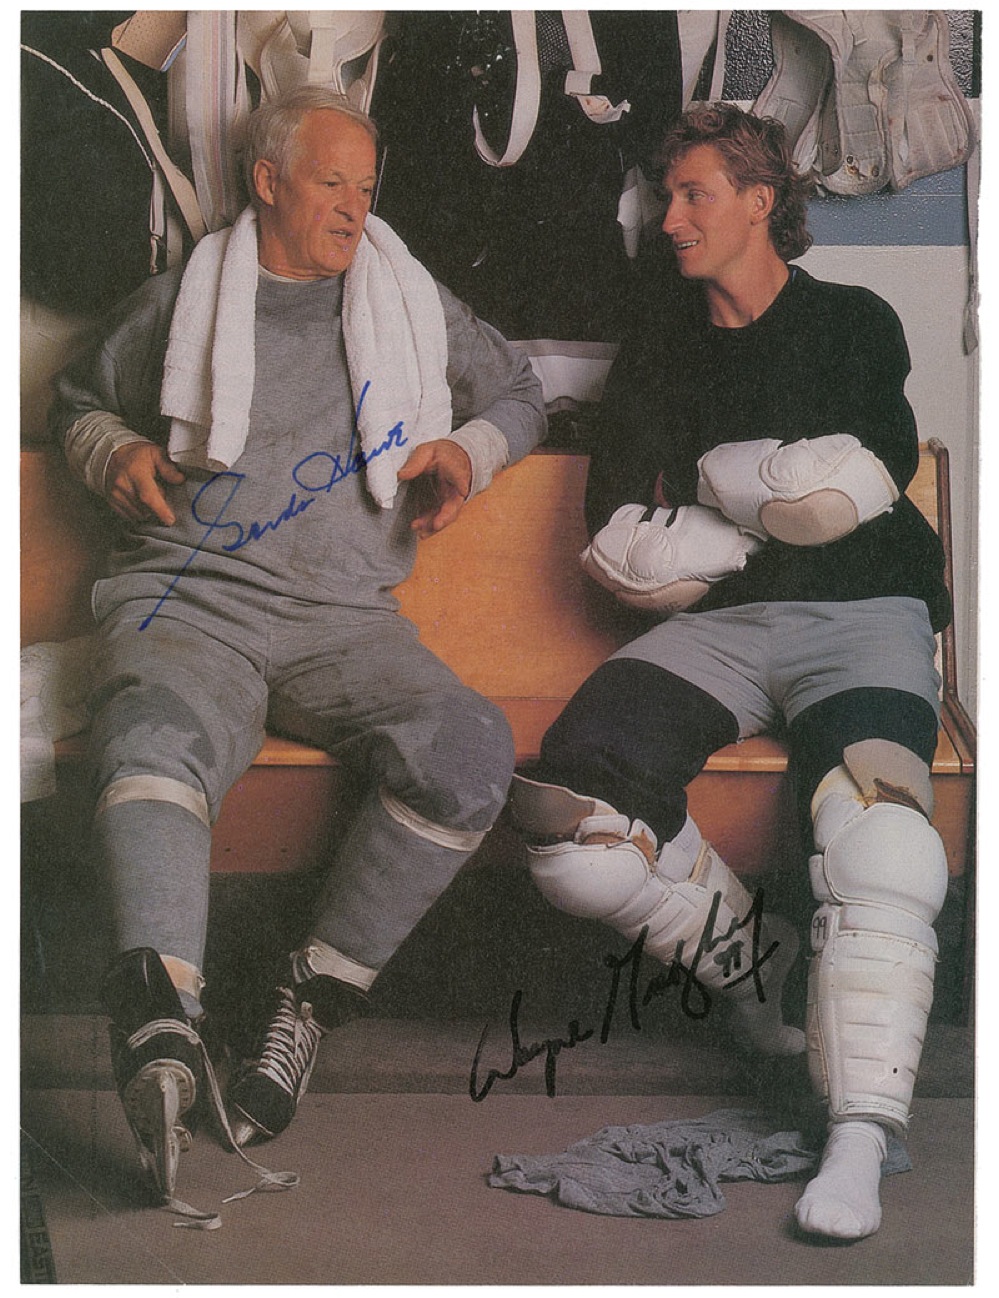 Lot #1298 Gordie Howe and Wayne Gretzky